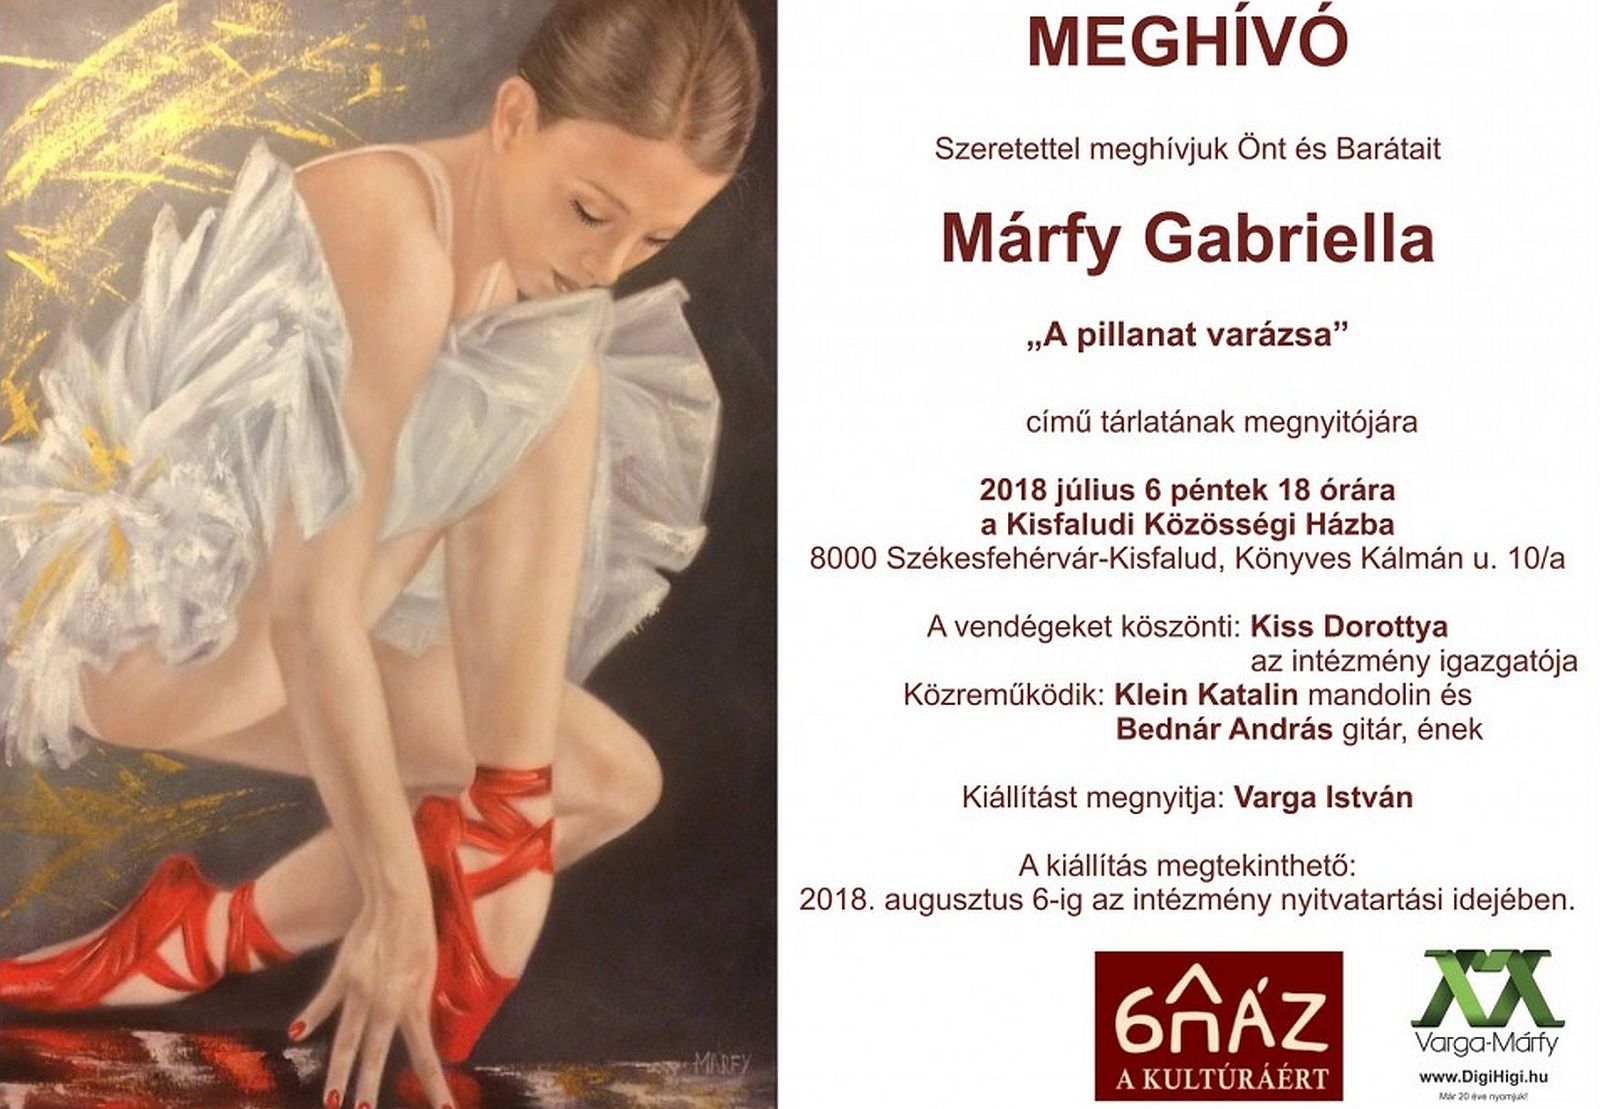 A pillanat varázsa - Márfy Gabriella kiállításának megnyitója a Kisfaludon